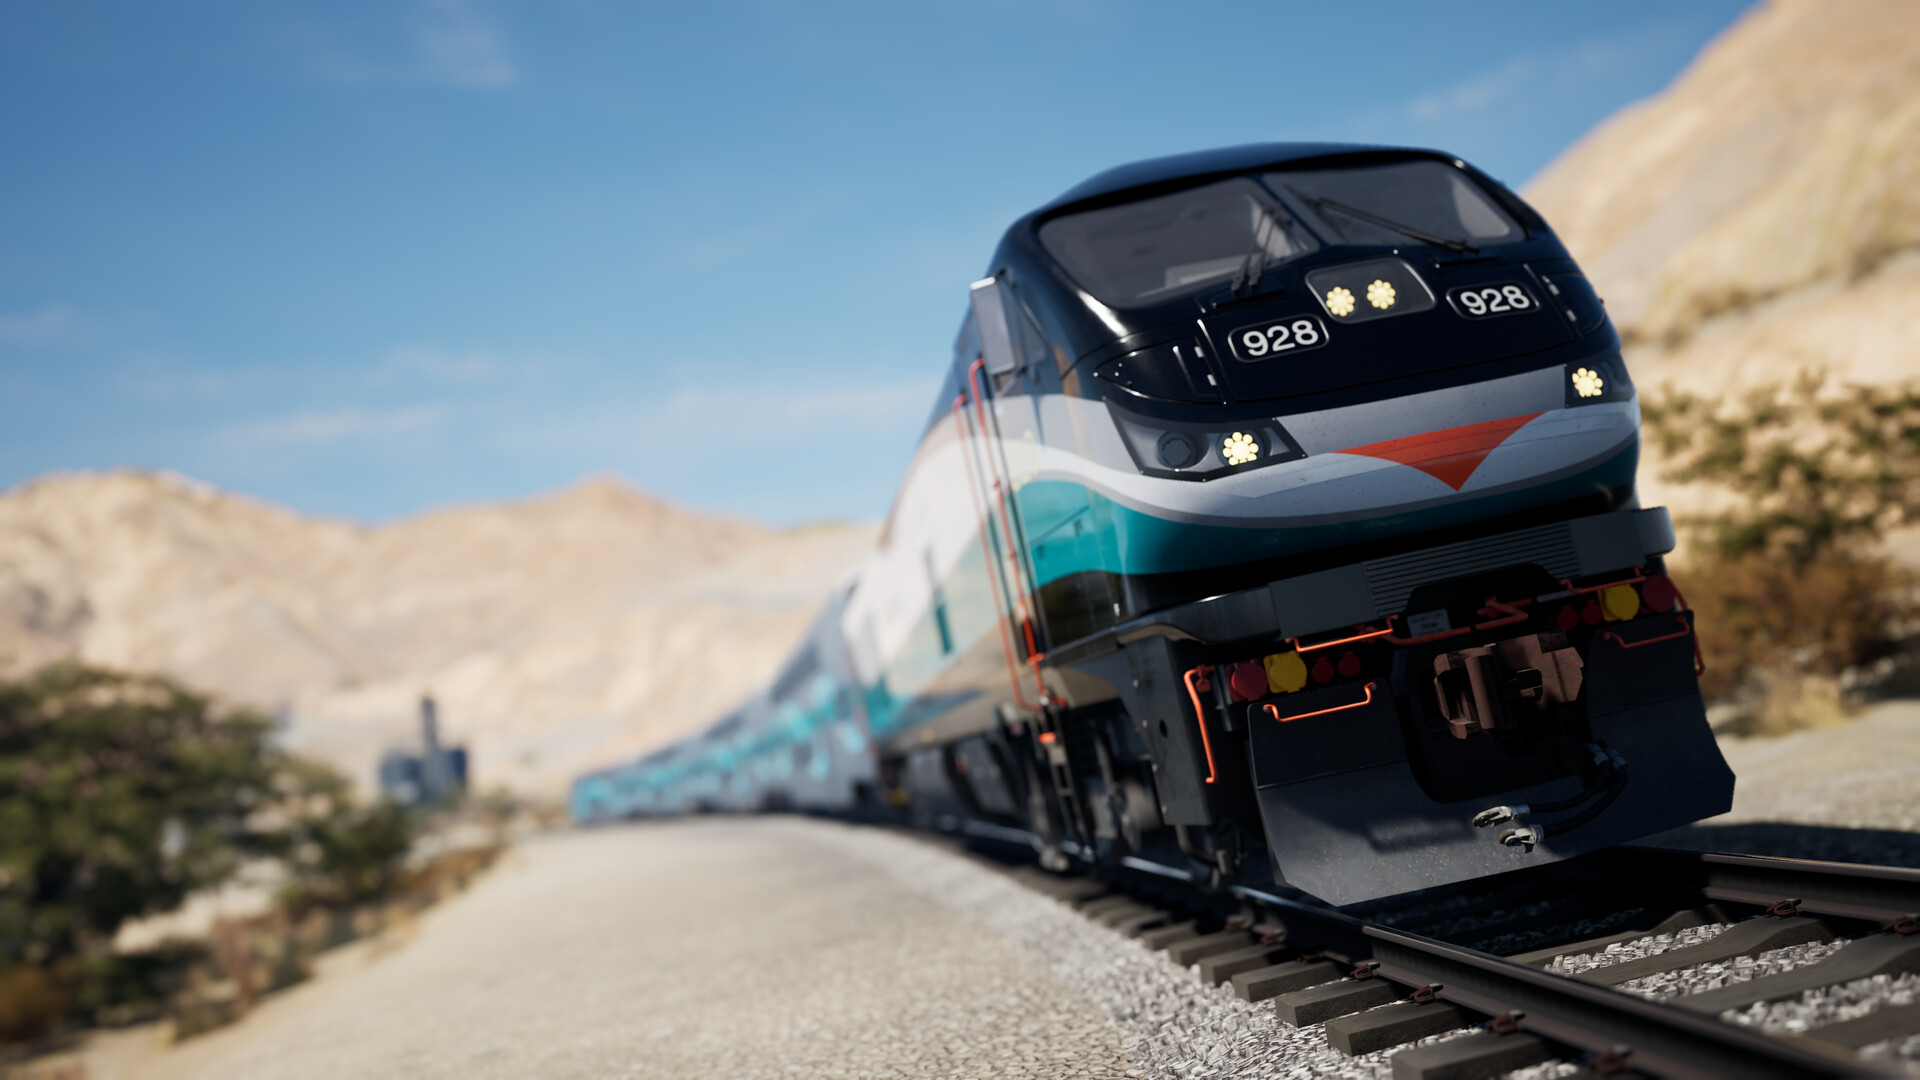 Train Sim World 4 Special Edition Steam Altergift